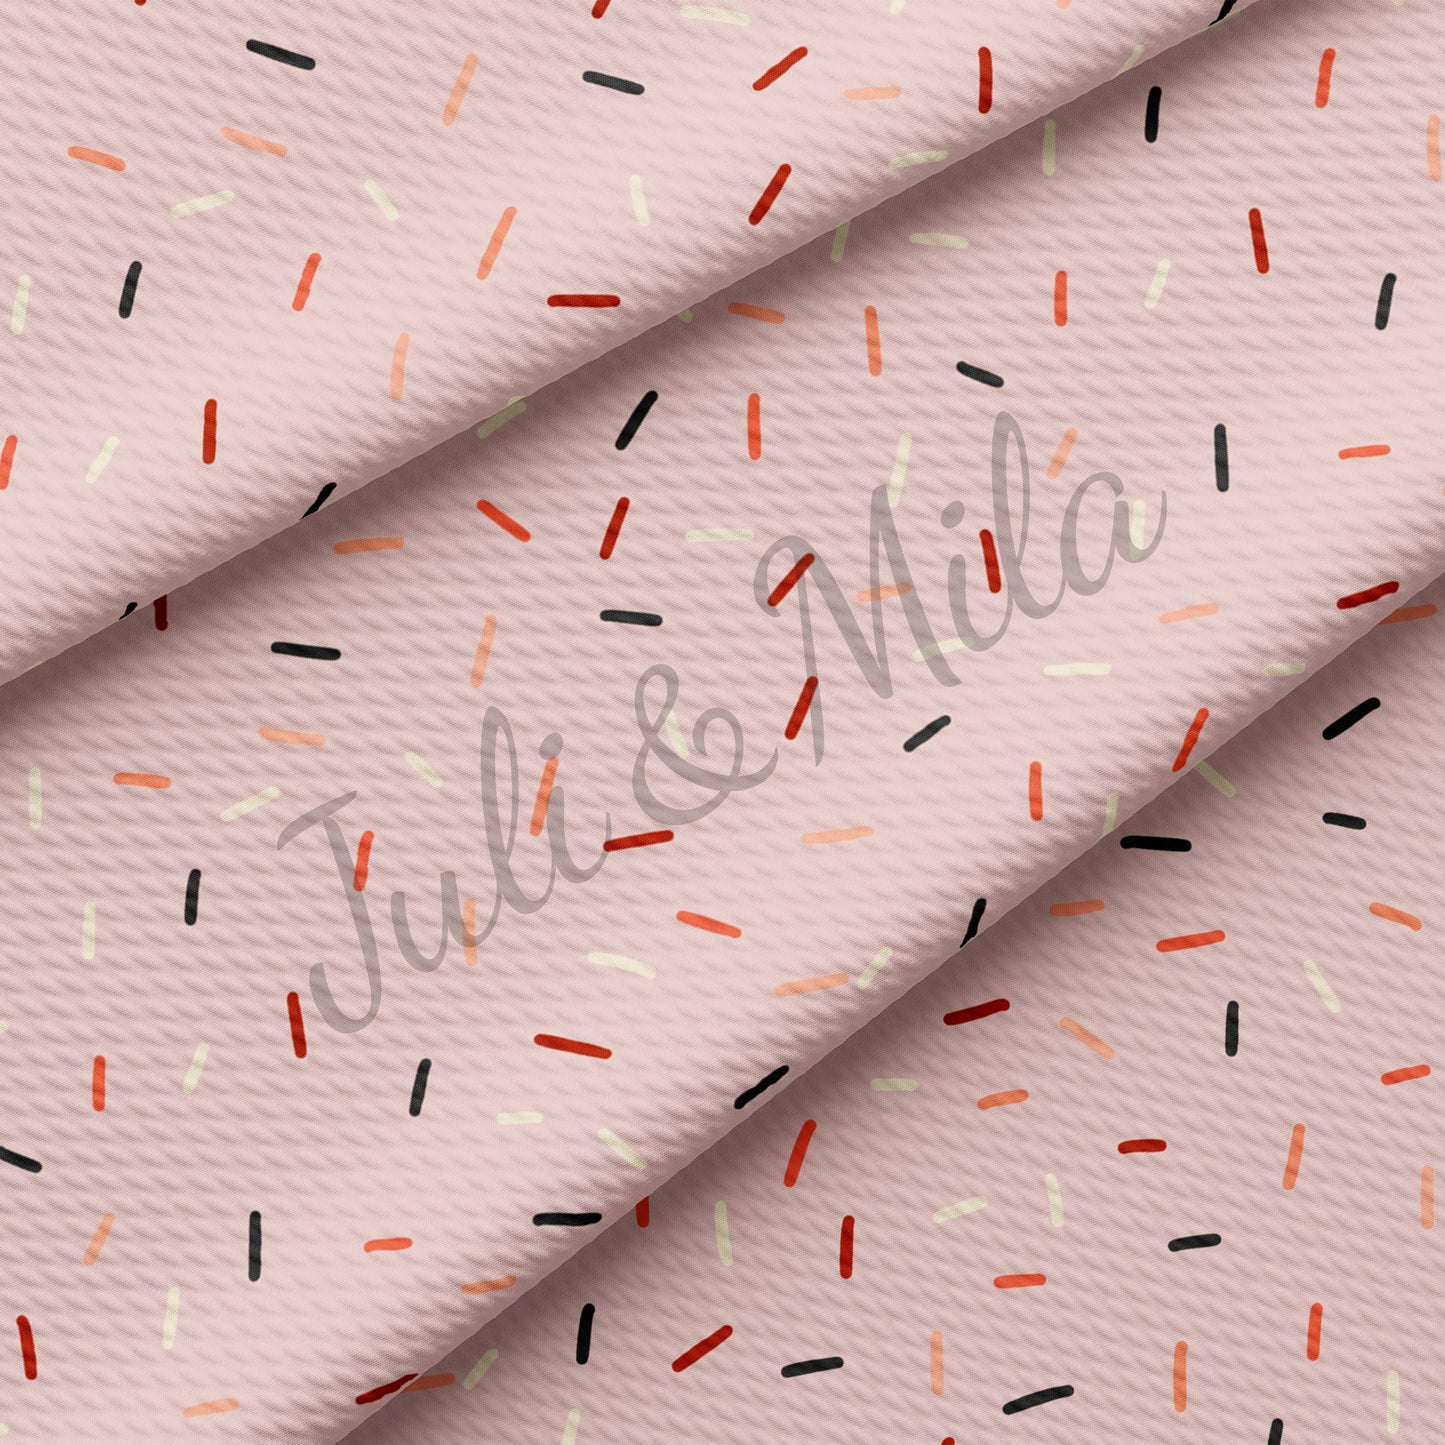 Confetti Printed  Bullet Textured Fabric  confetti2